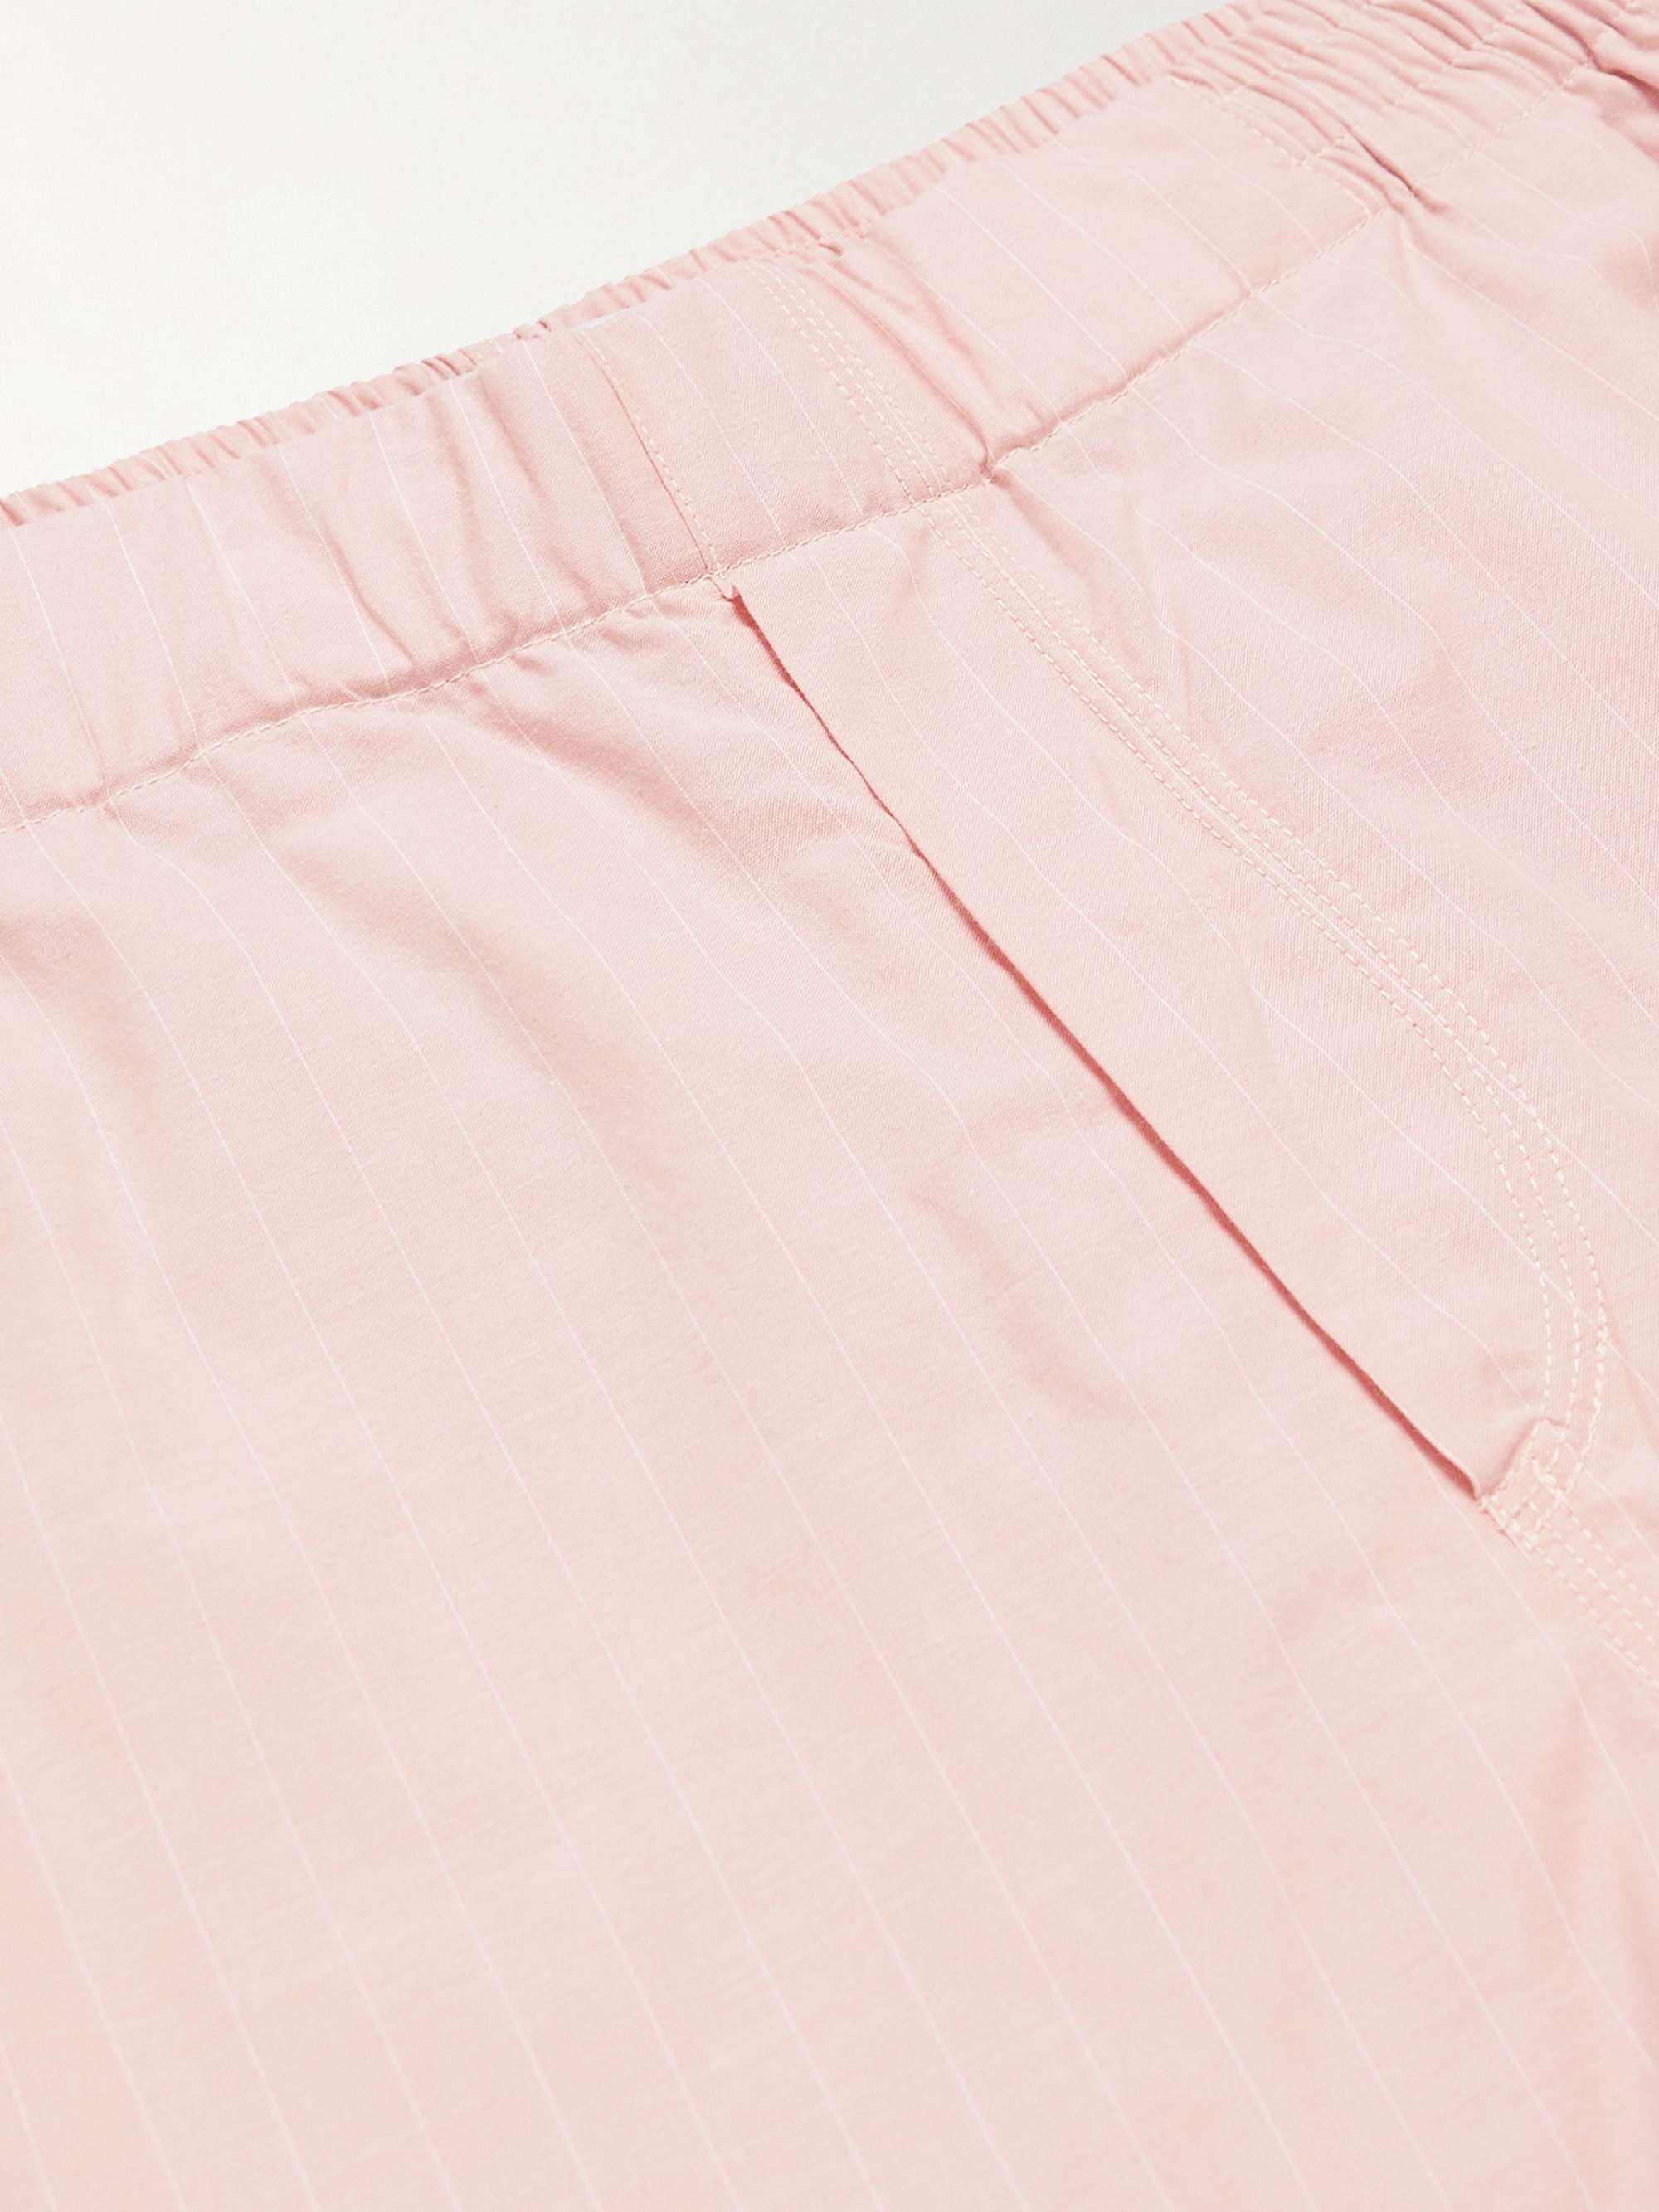 HAMILTON AND HARE Pinstriped Cotton Pyjama Shorts